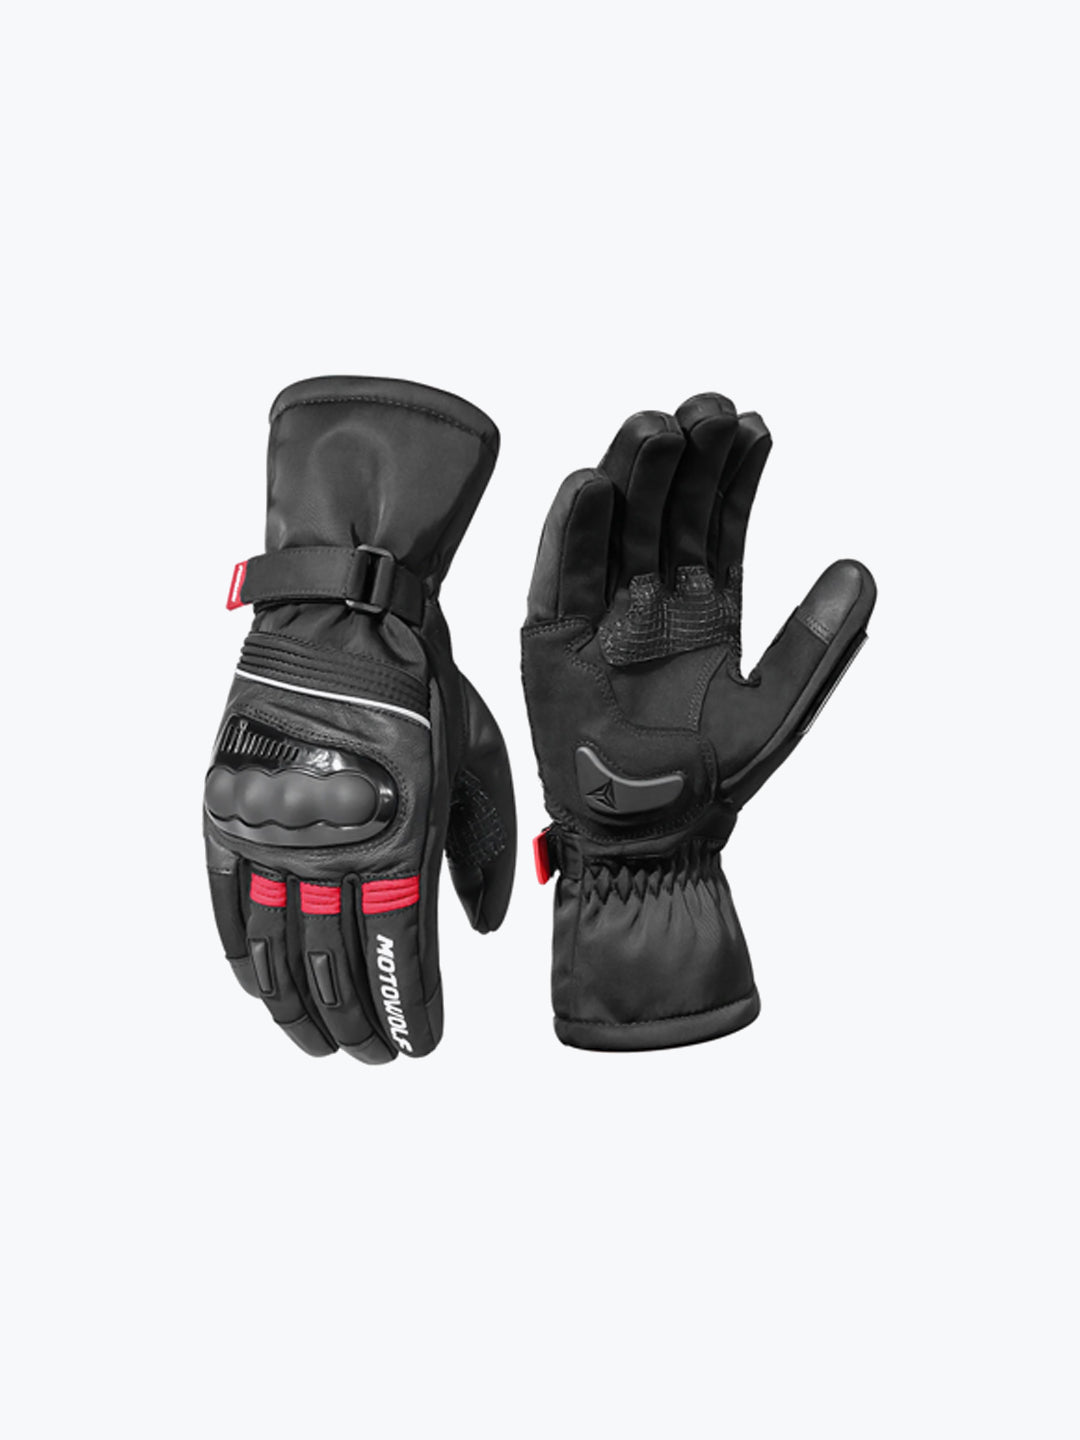 Motowolf Gloves Black Red 0318